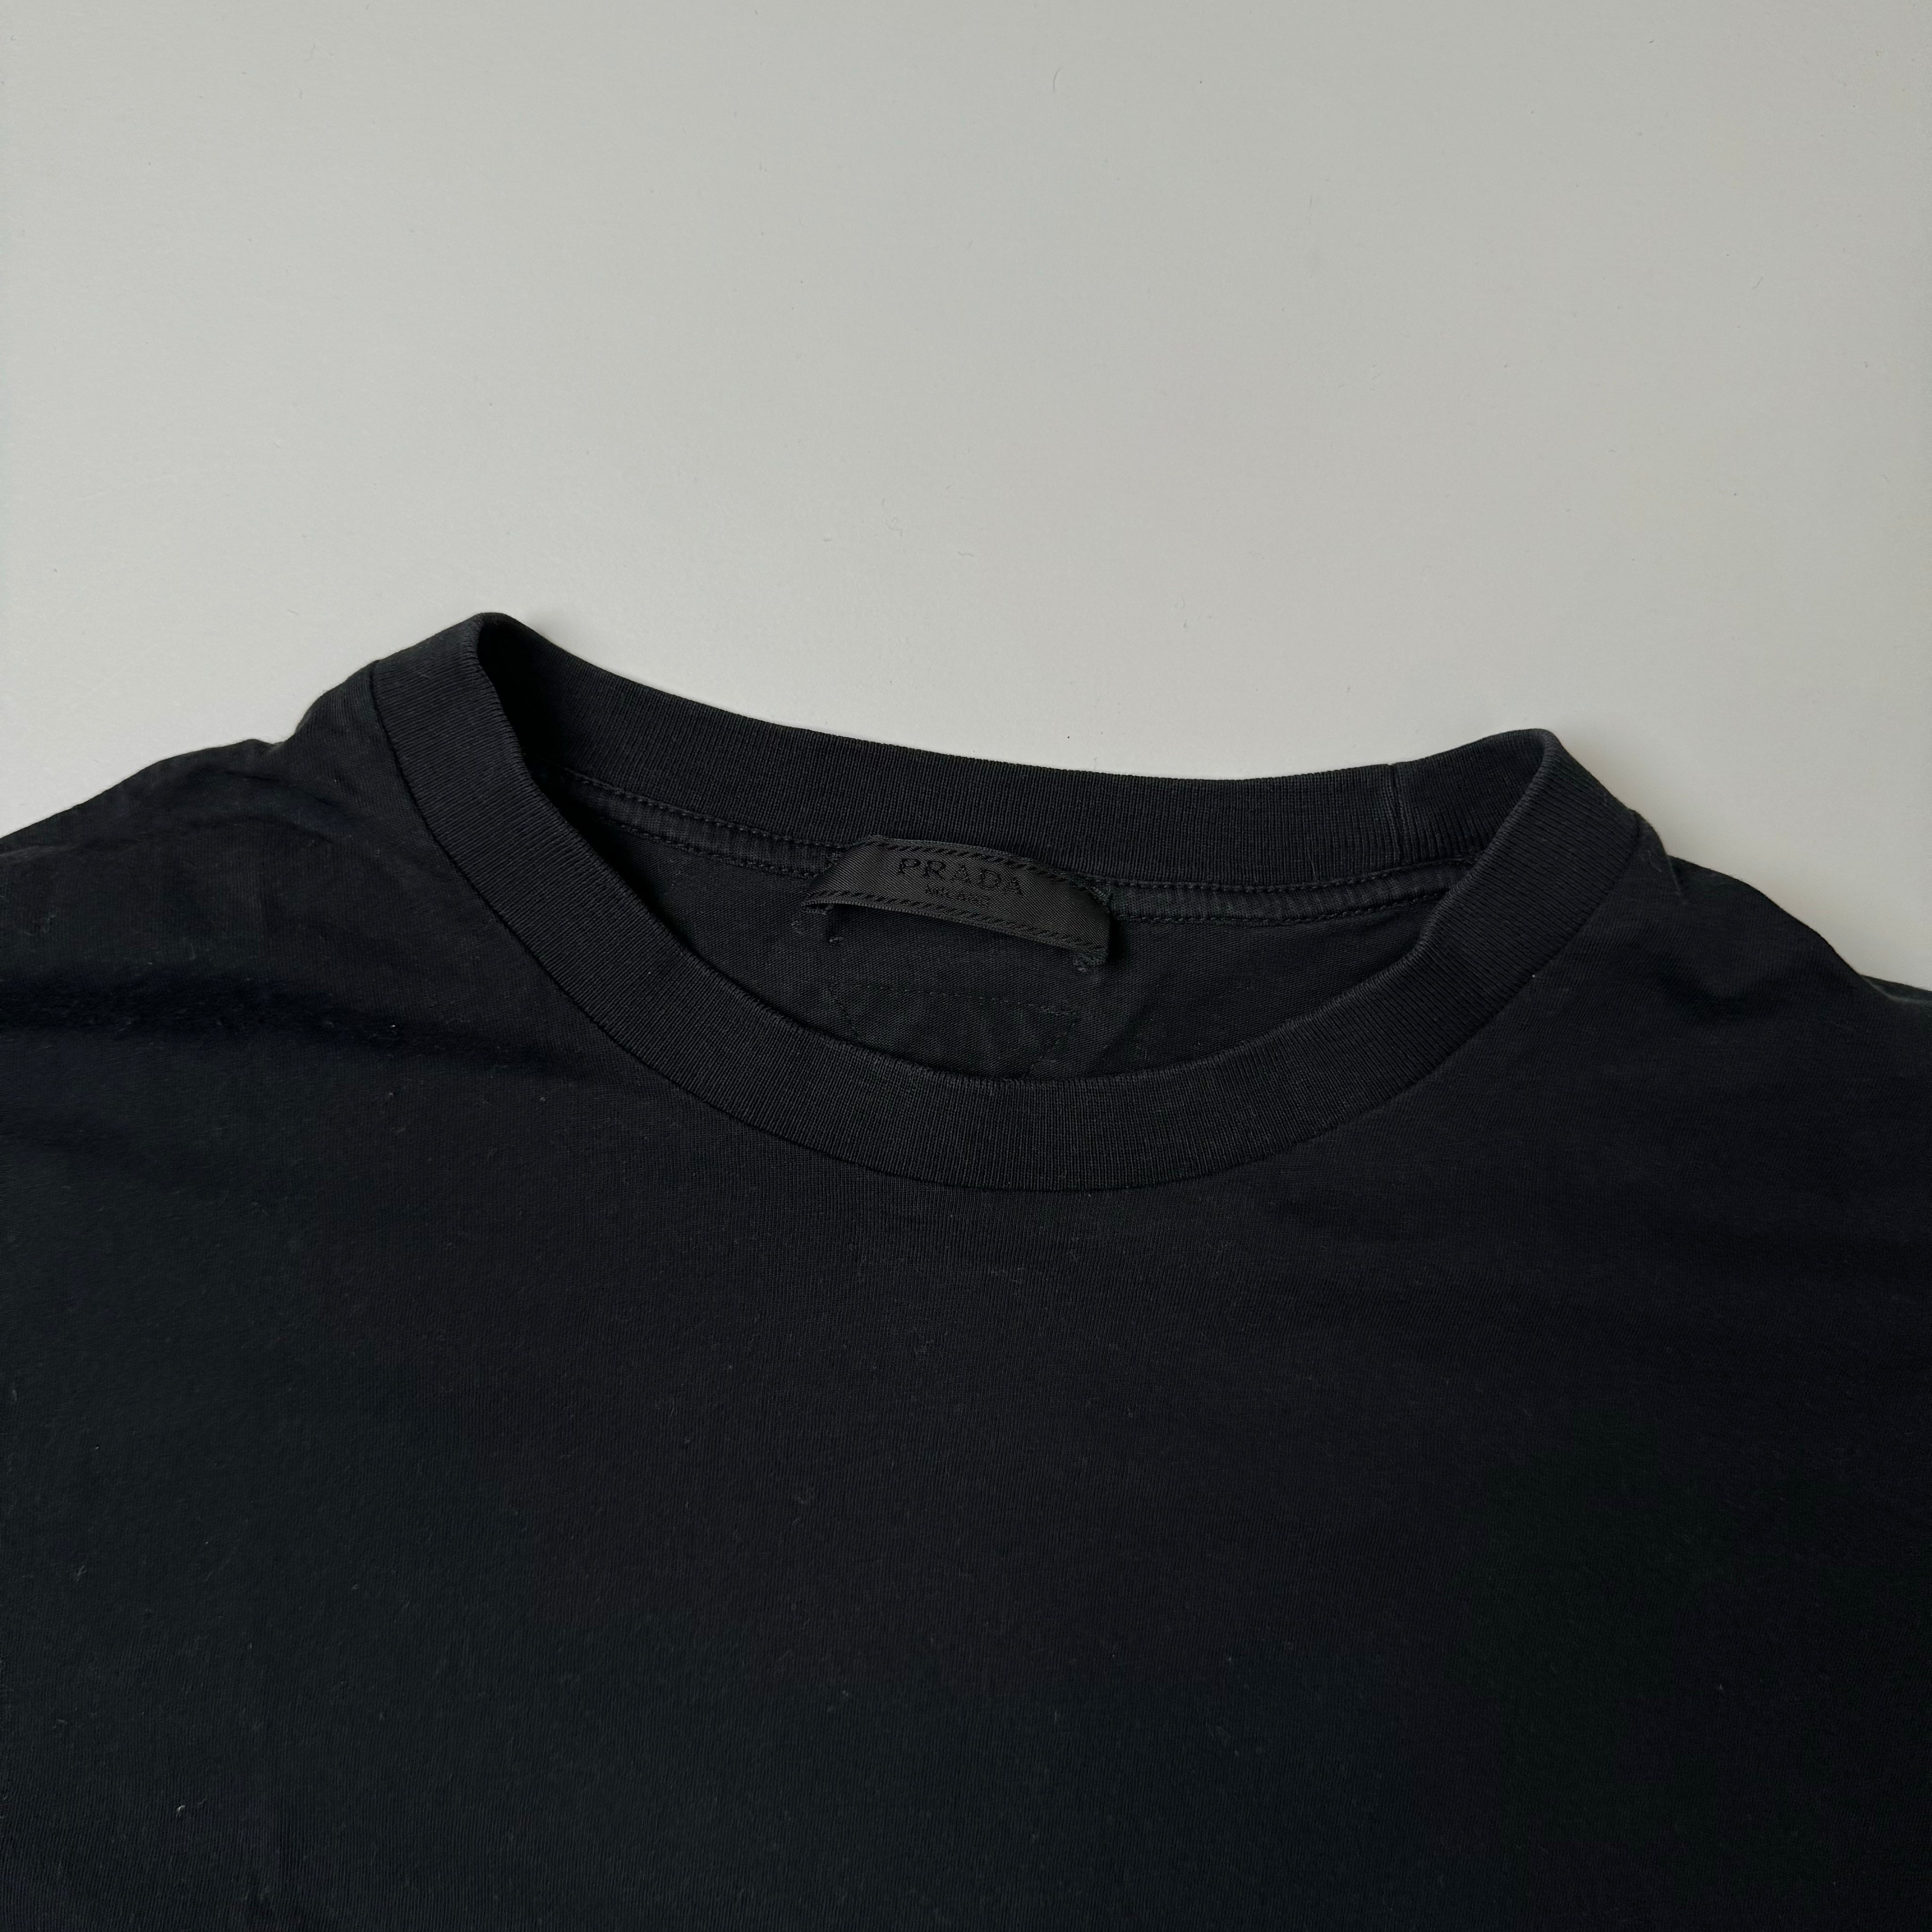 Prada blank t shirt (Str. M)